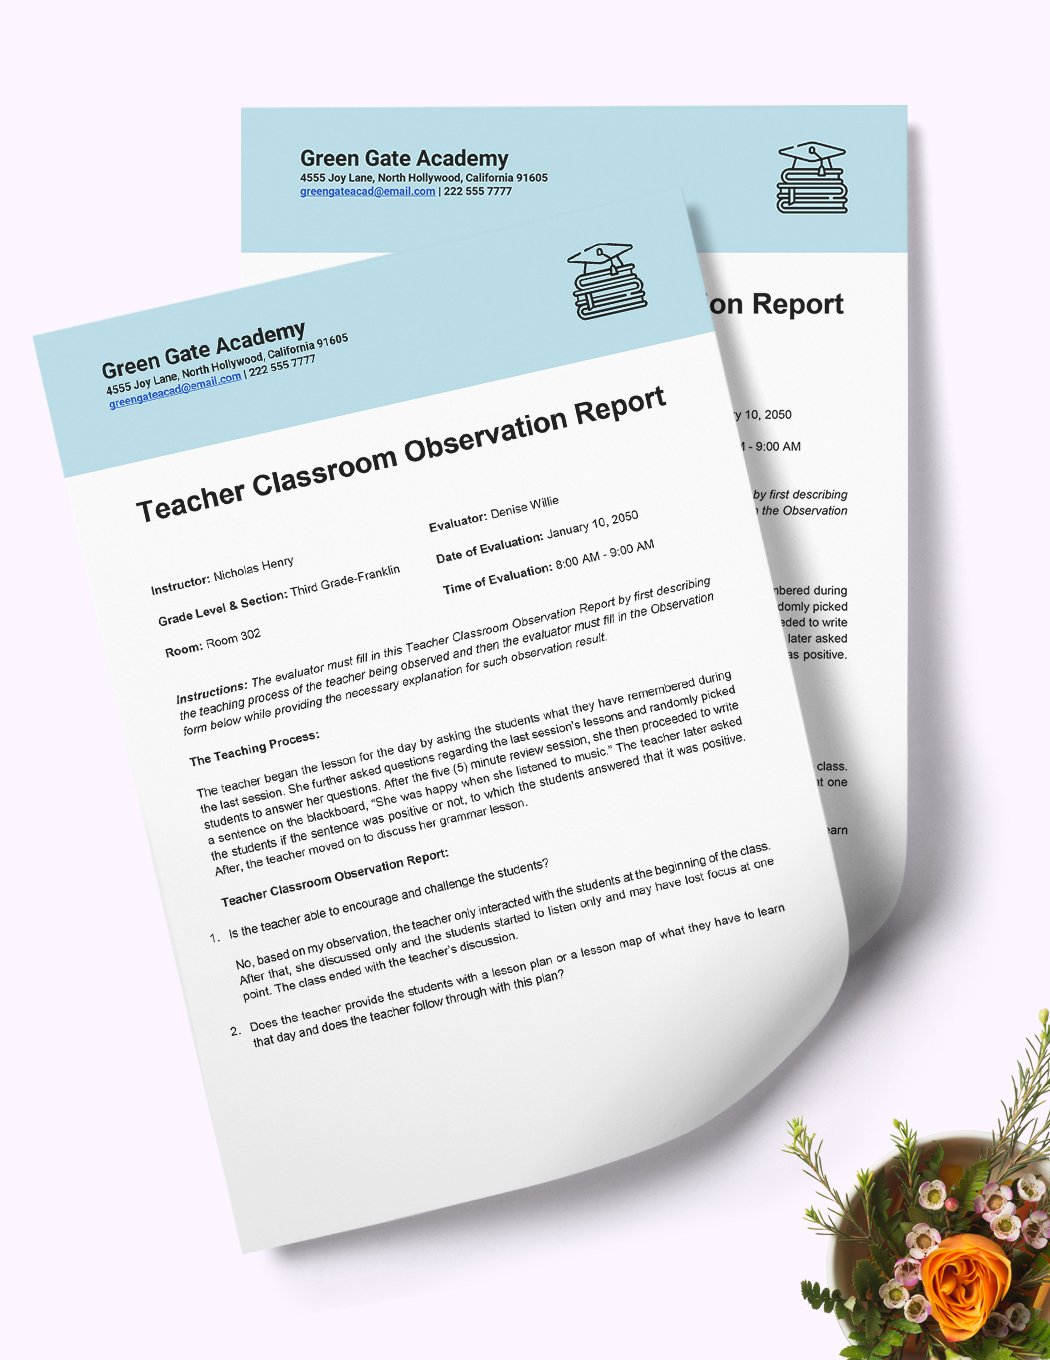 teacher-classroom-observation-report